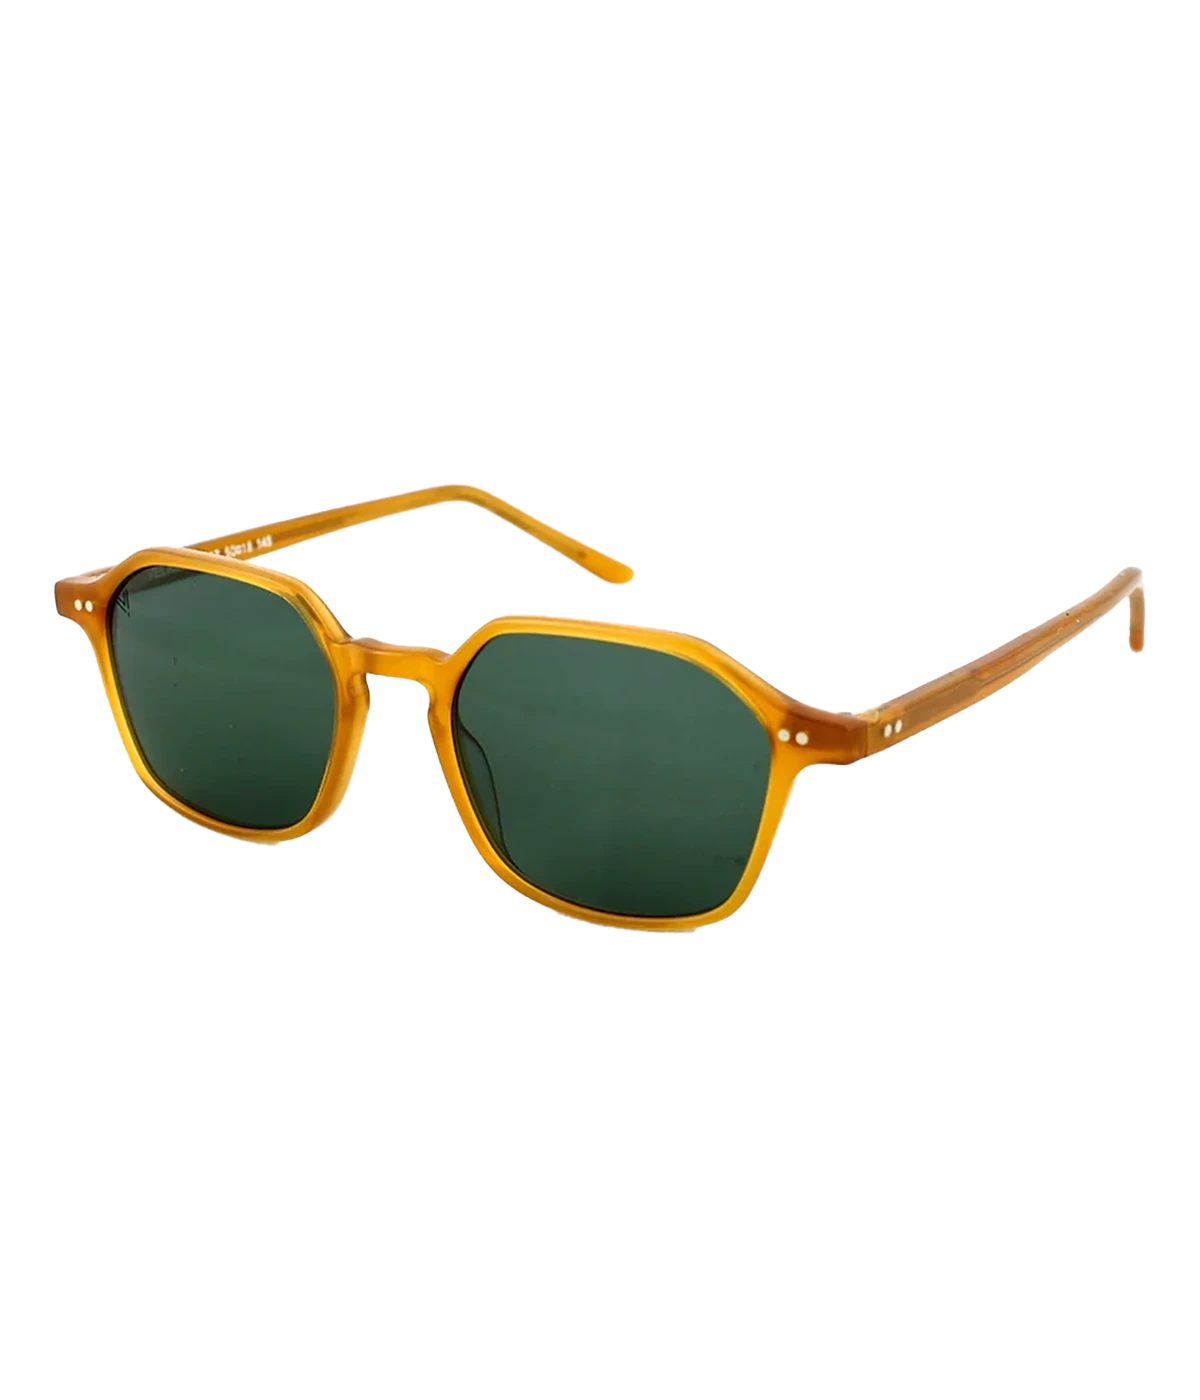 Velasca Sunglasses in Honey & Green